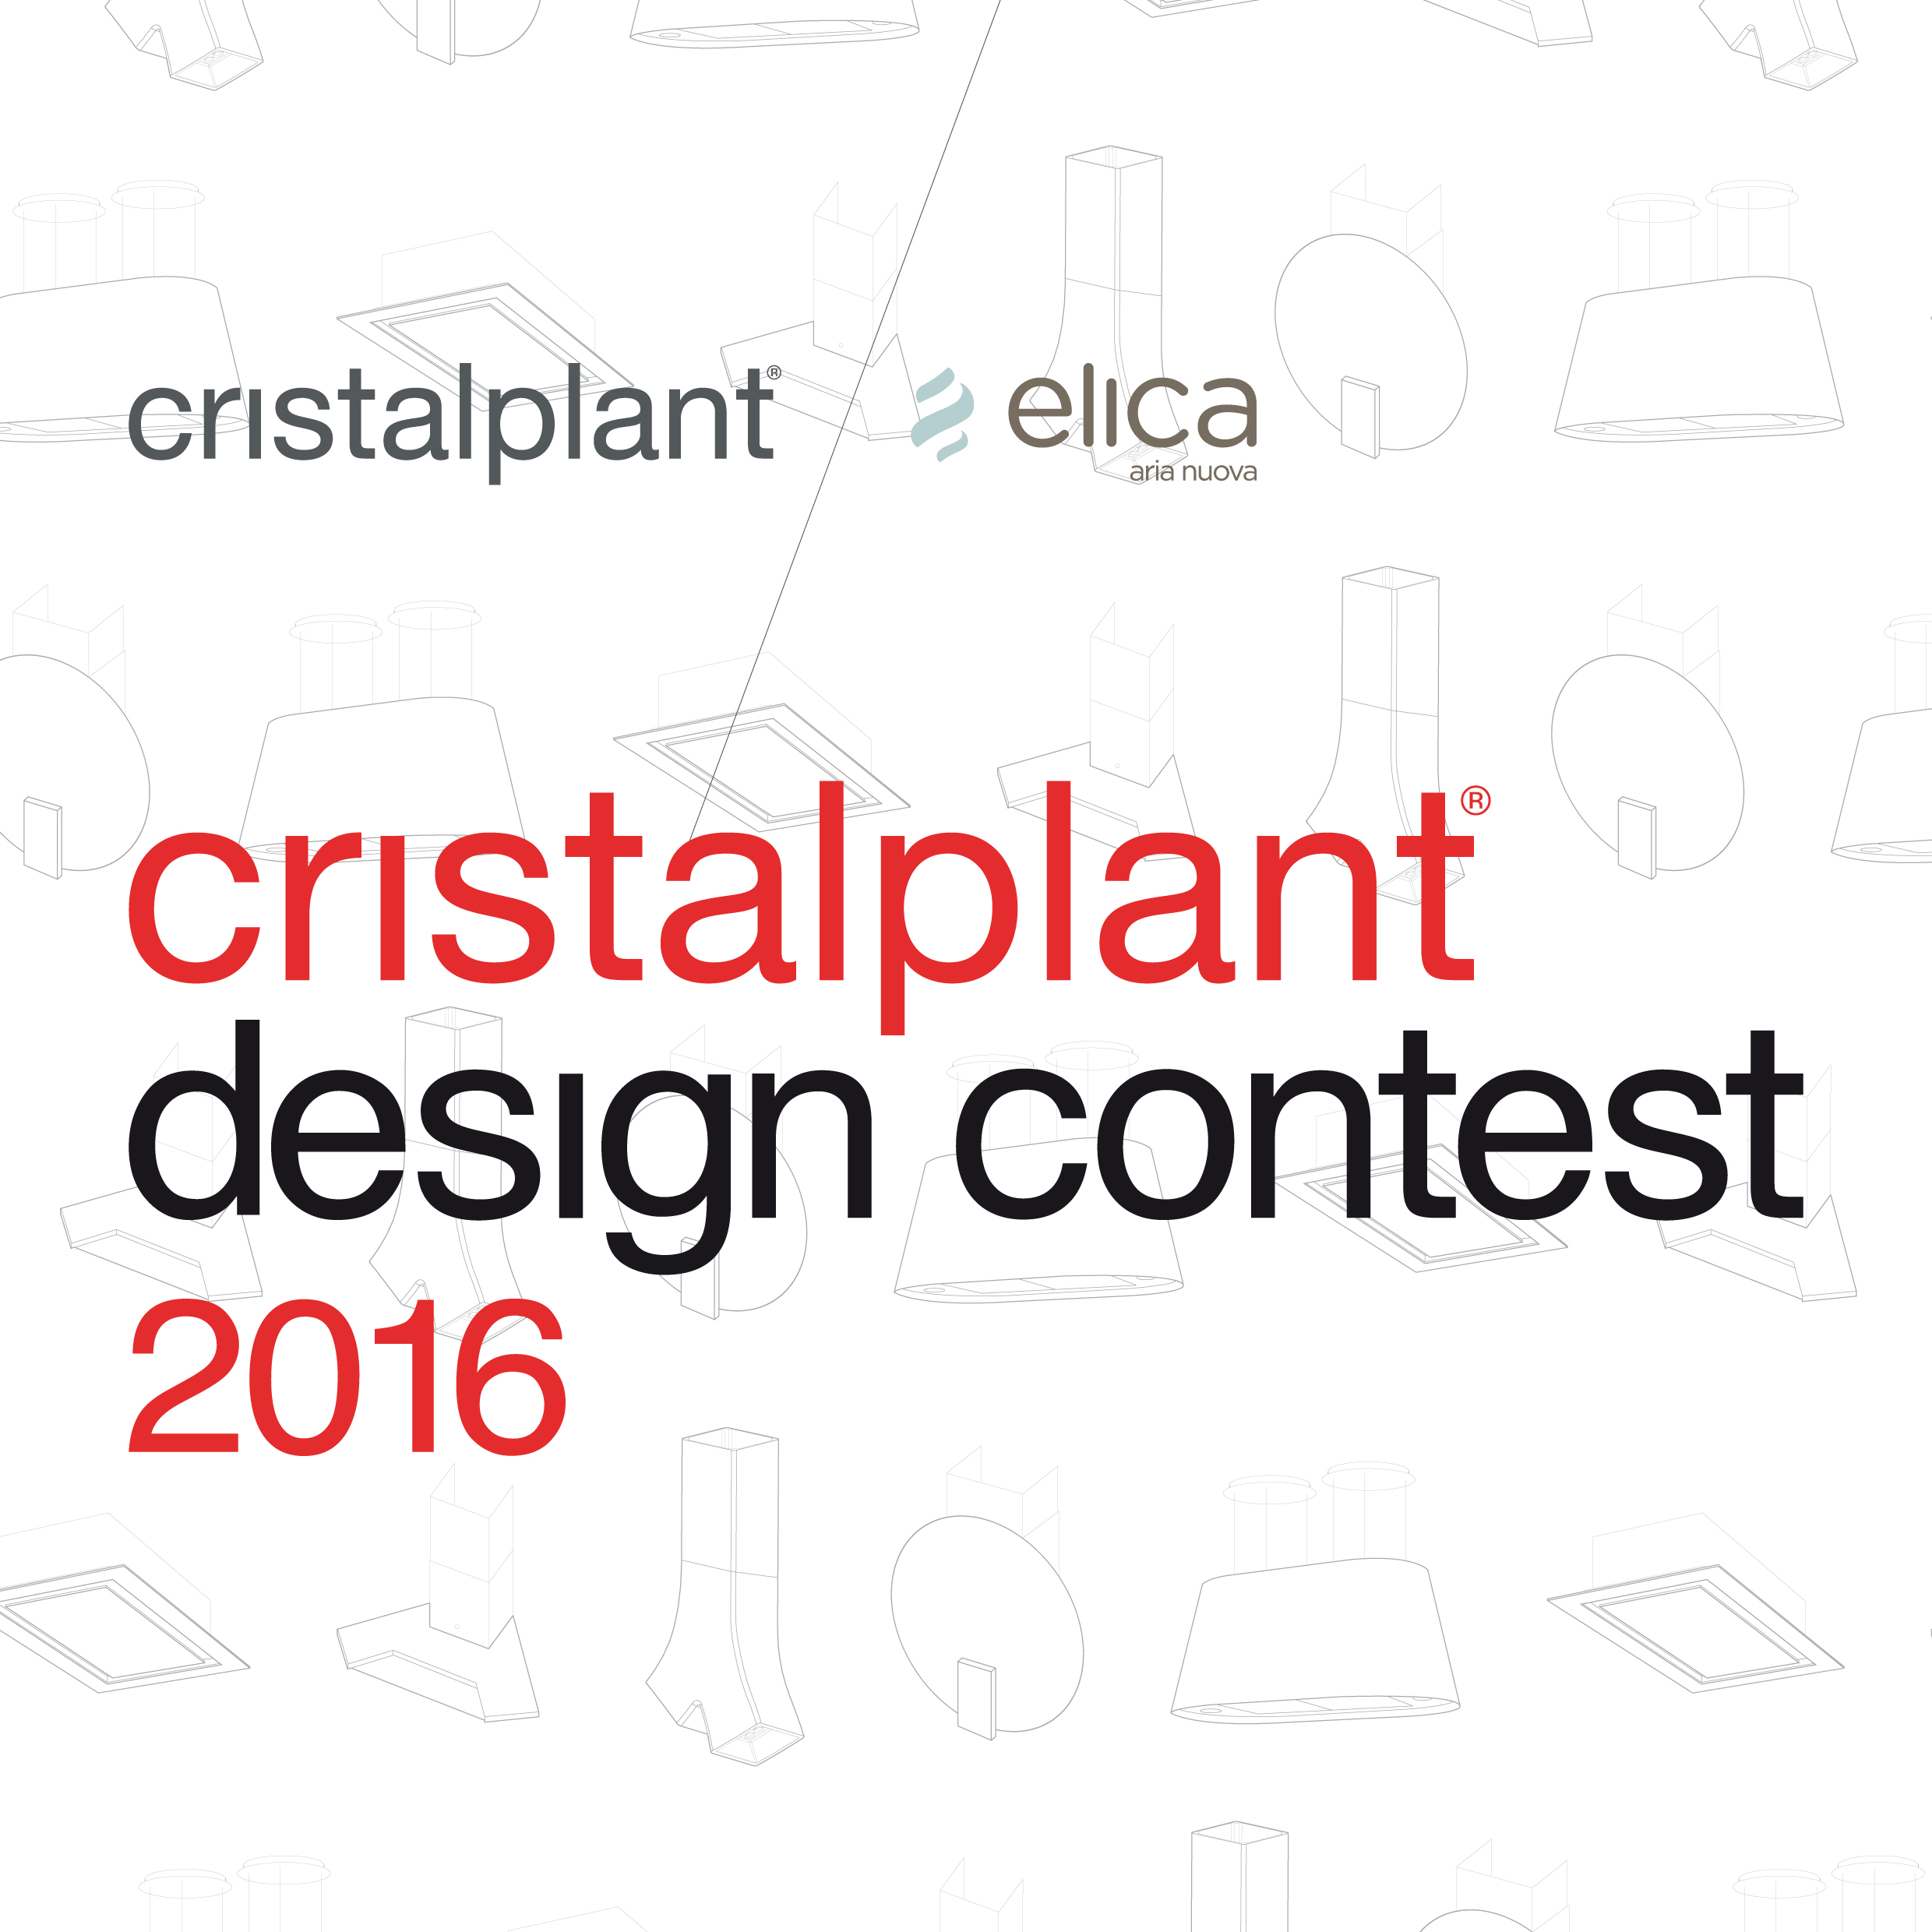 Cristalplant Design Contest 2016 in collaborazione con Elica